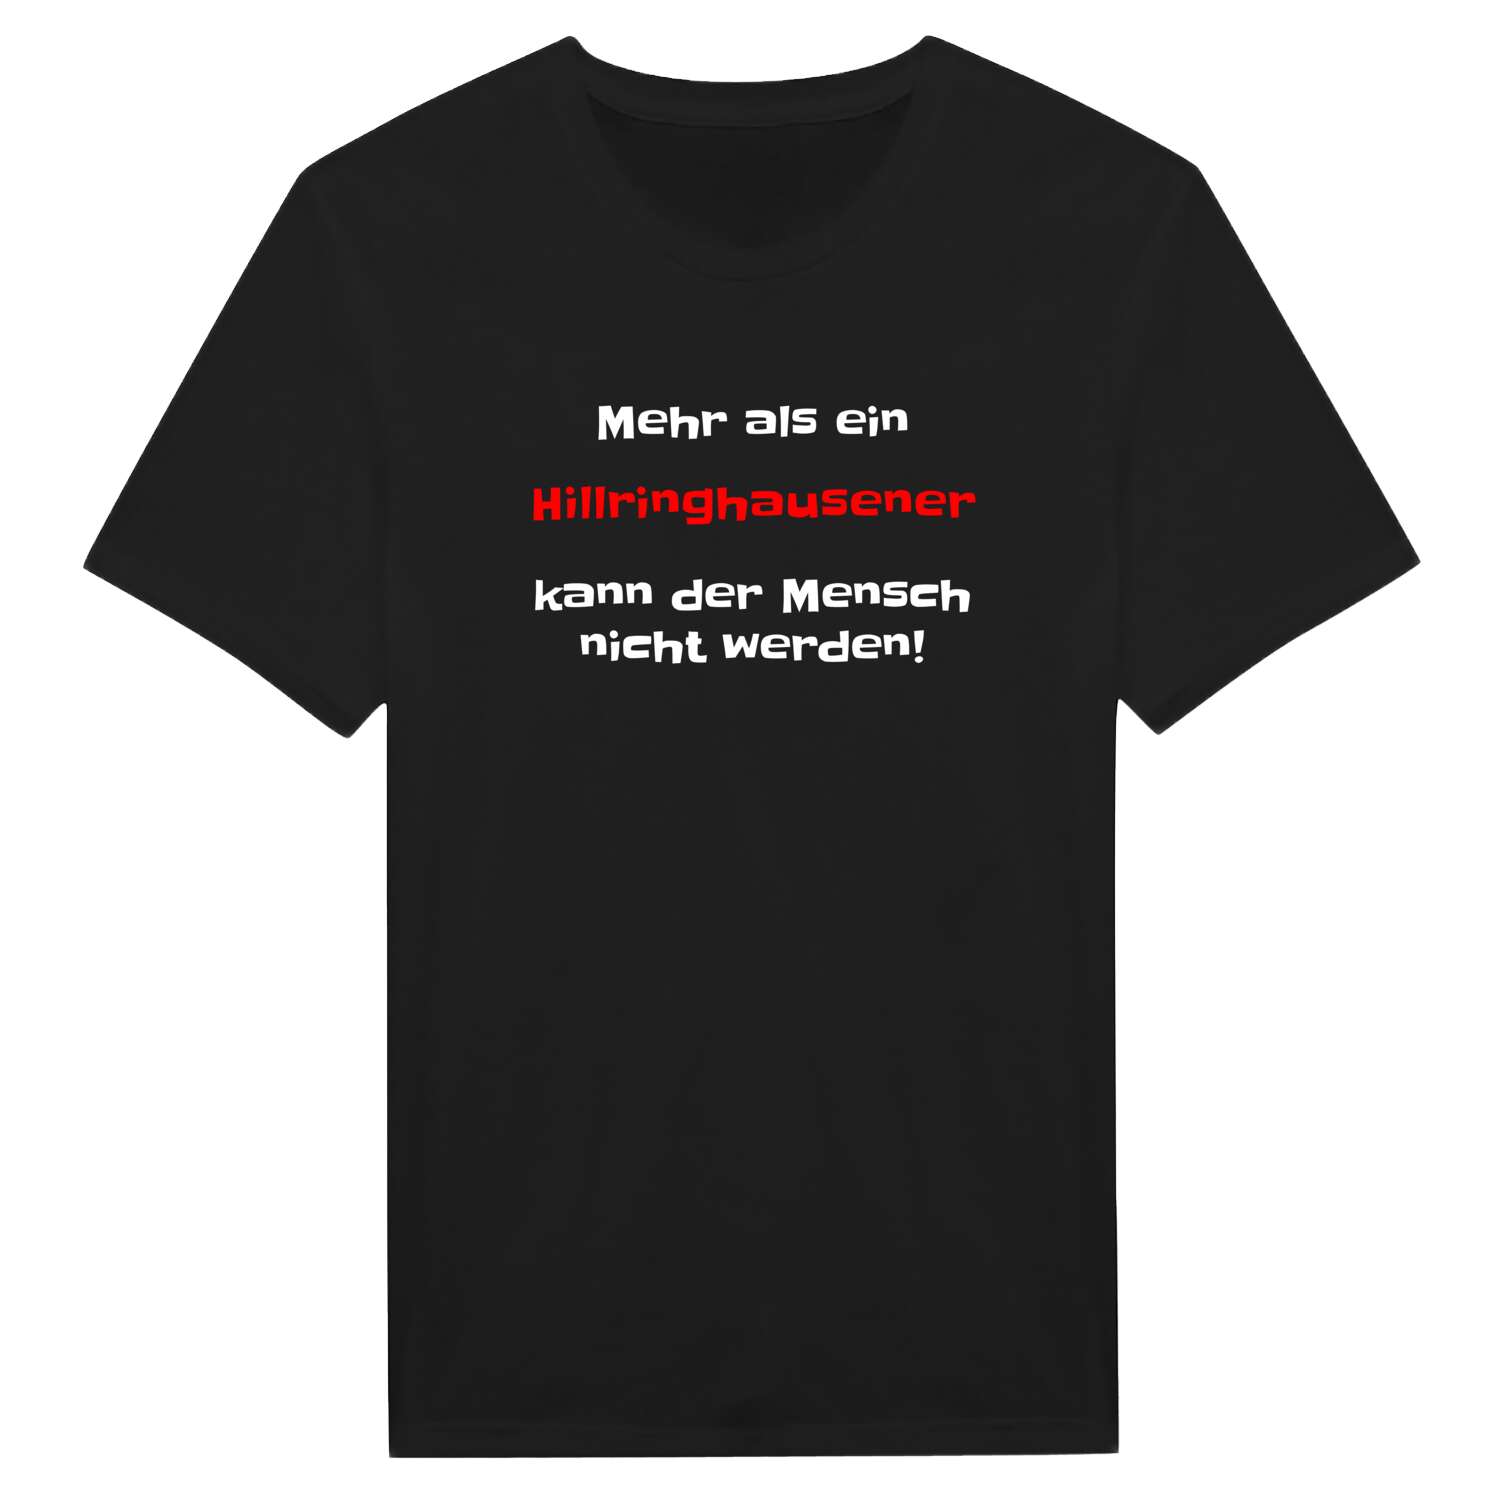 Hillringhausen T-Shirt »Mehr als ein«